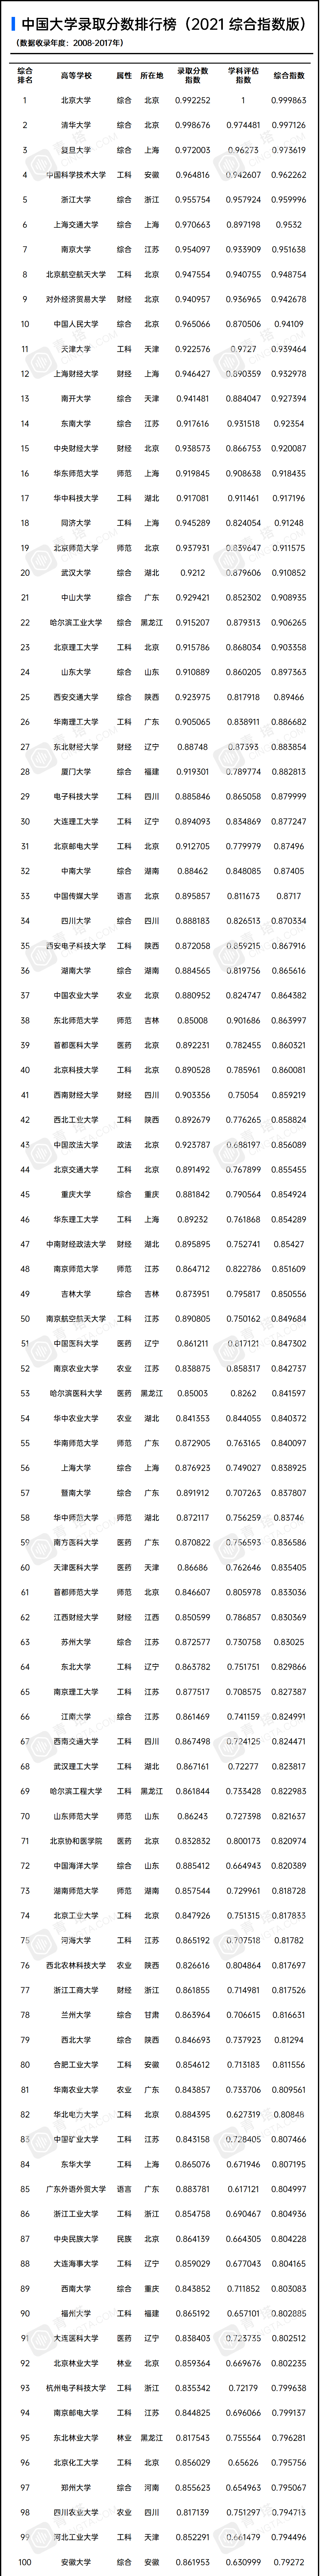 2021版中国大学录取分数排行榜